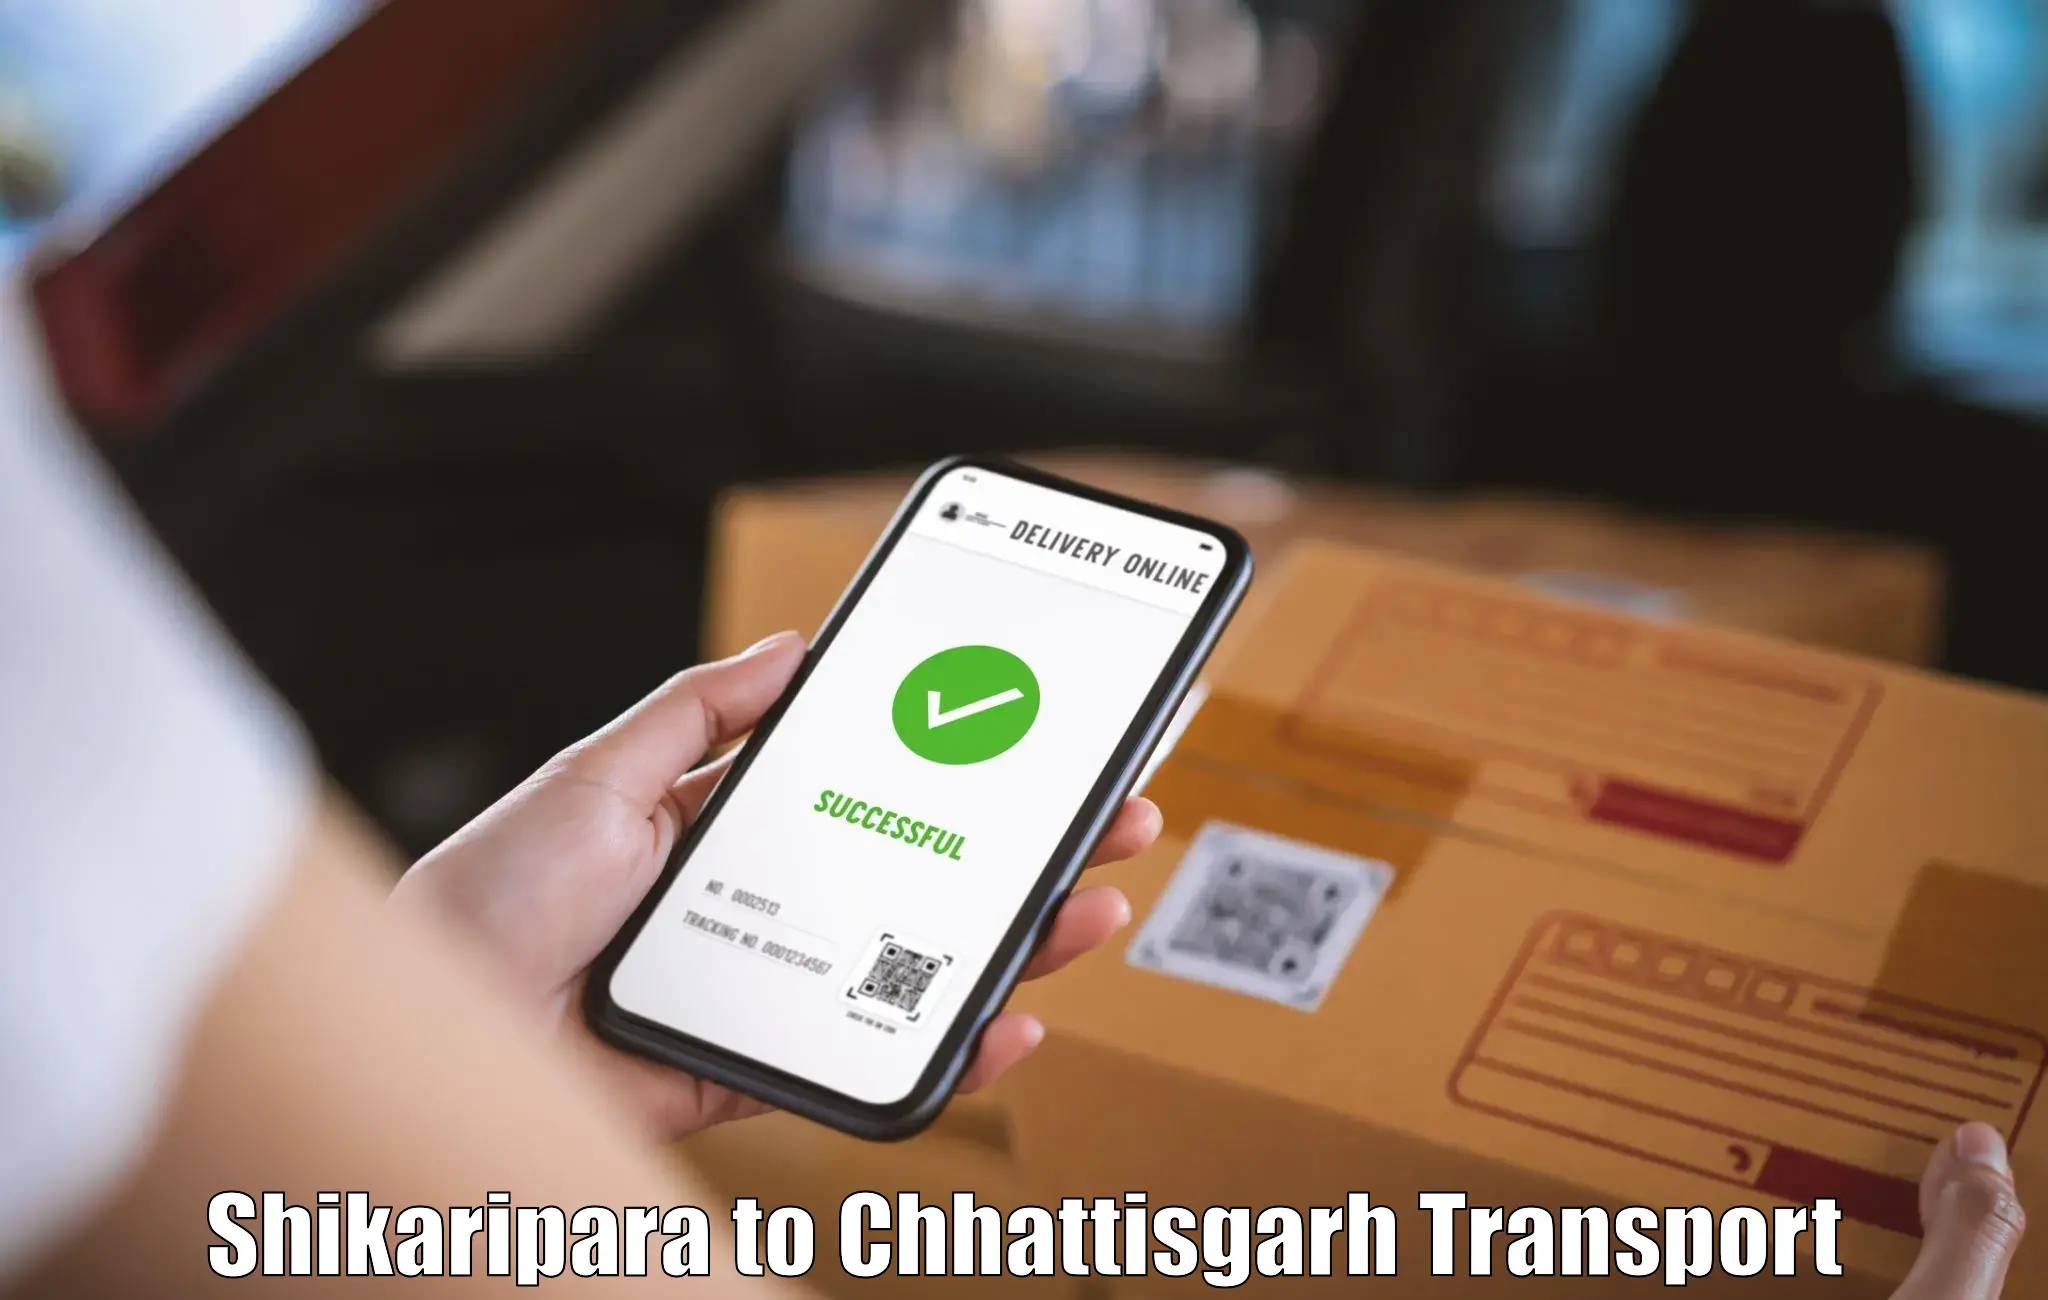 Pick up transport service Shikaripara to Raigarh Chhattisgarh